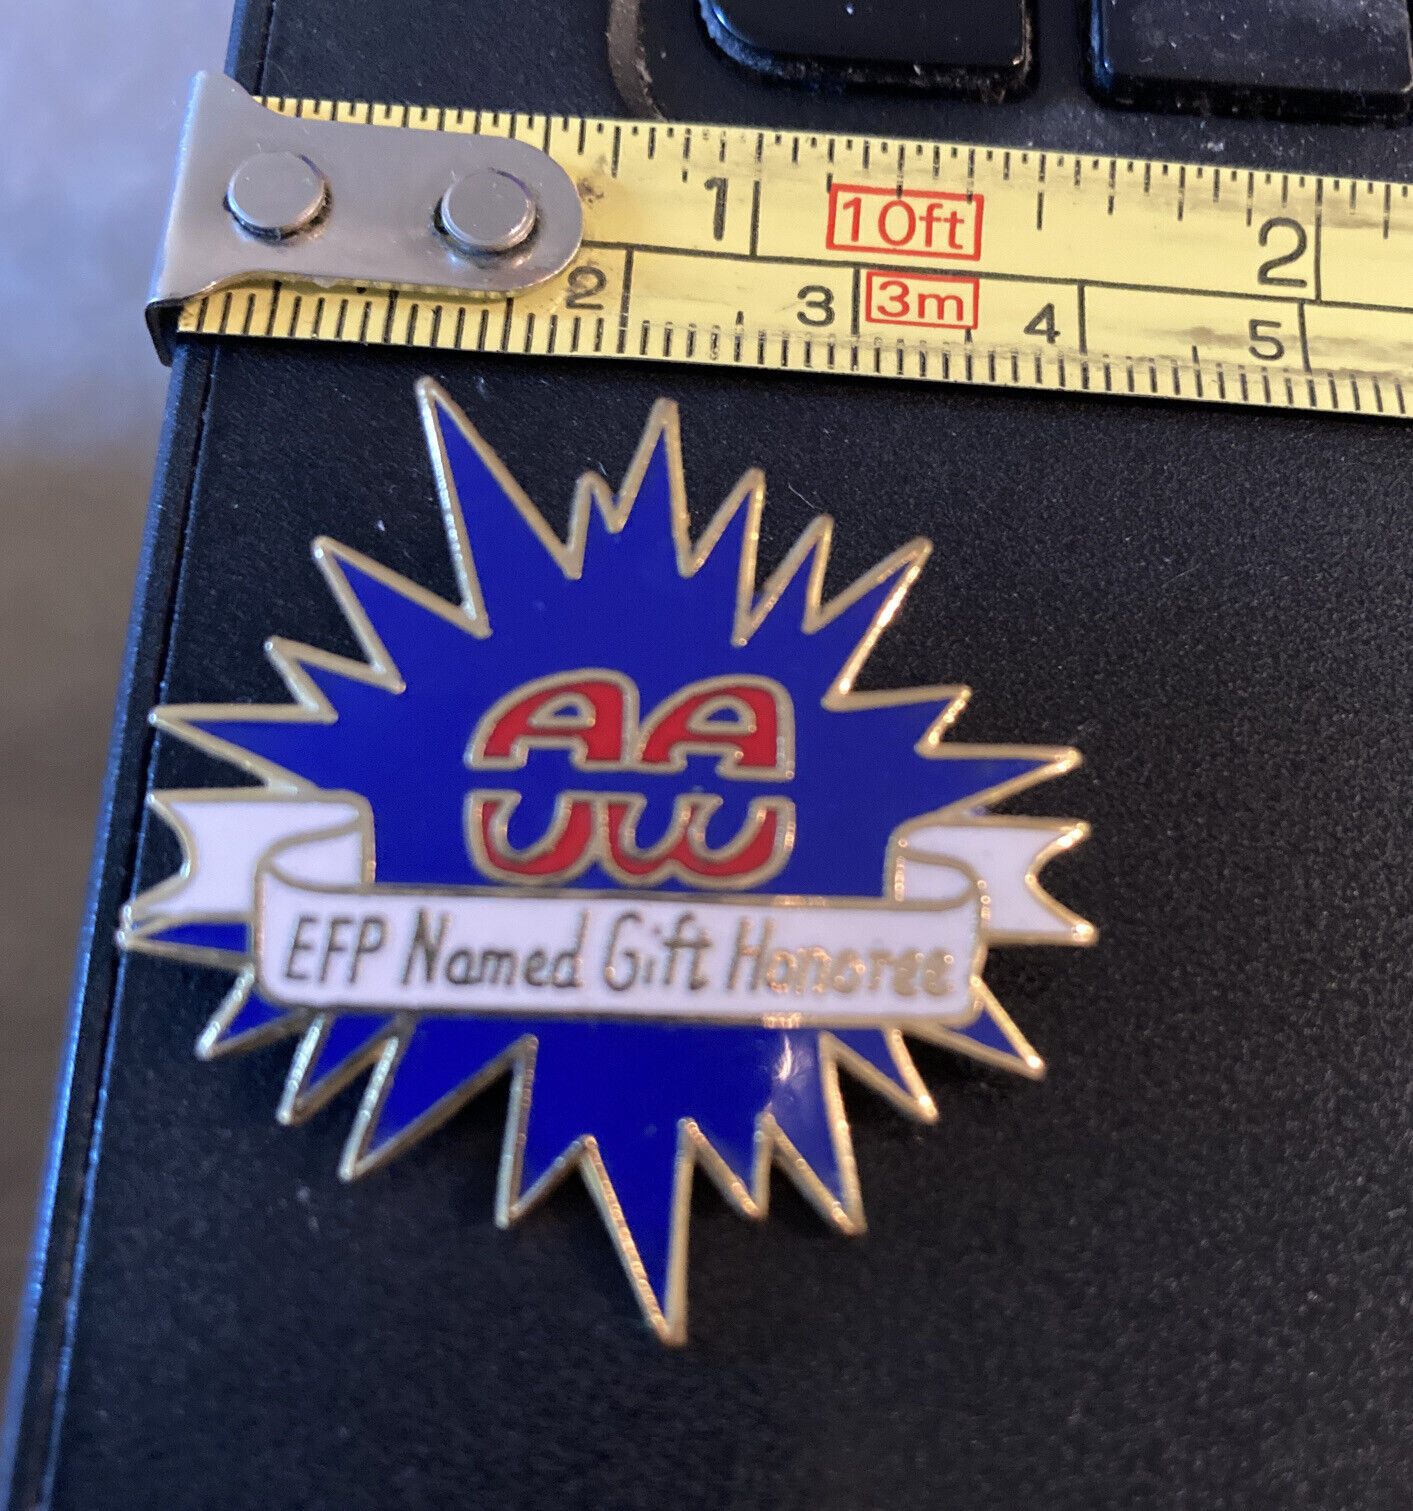 Vintage Pin - EFP Nomand Gift Honoree 